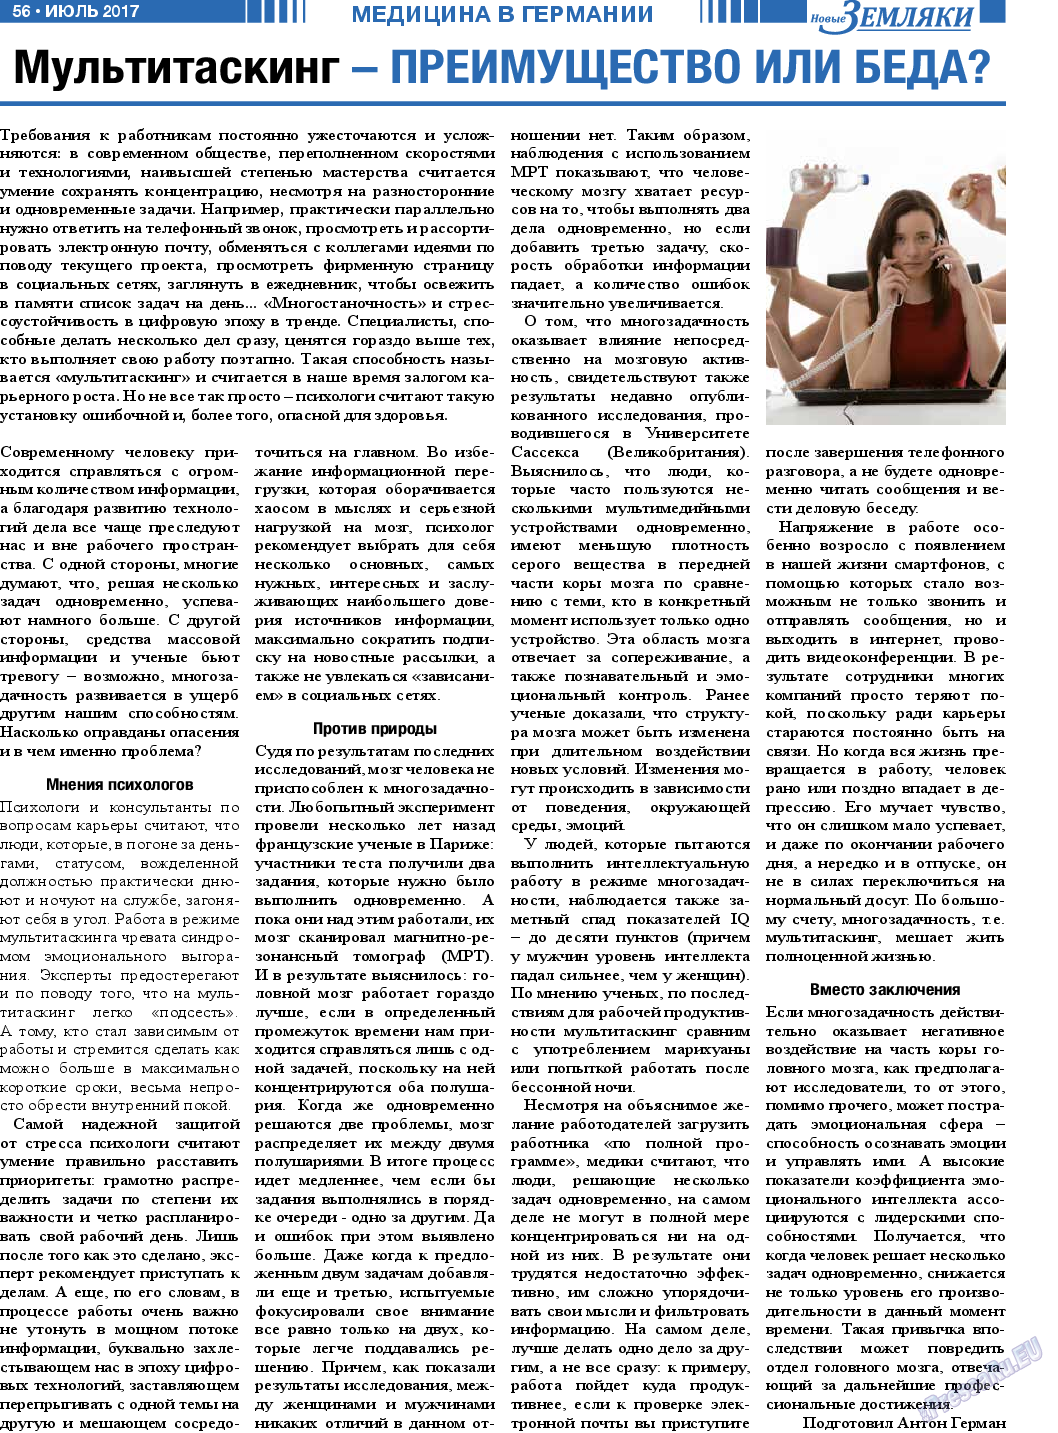 Новые Земляки, газета. 2017 №7 стр.56